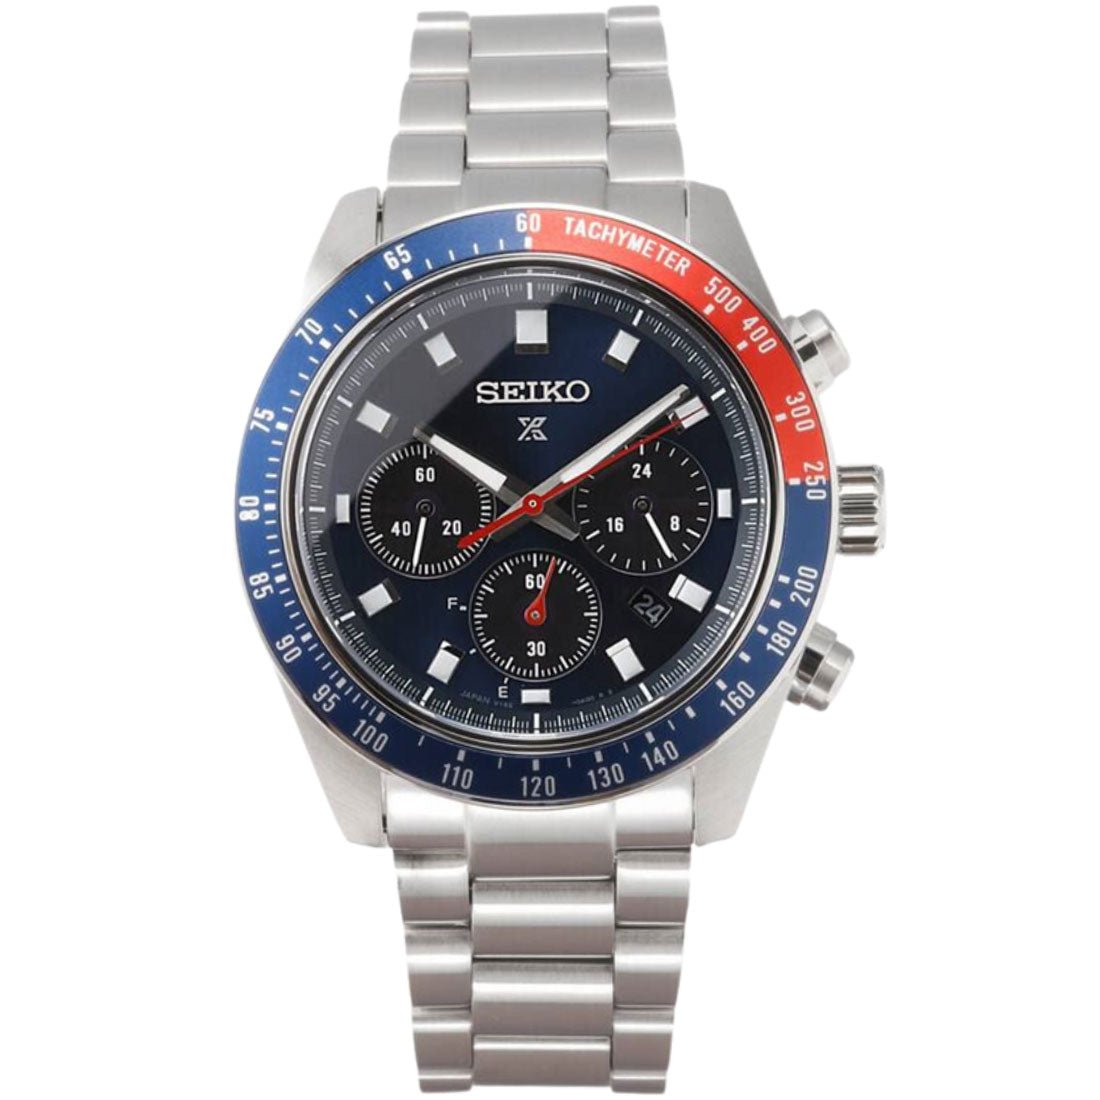 Seiko Prospex SpeedTimer SBDL097 Chronograph Solar Blue Dial Watch -Seiko